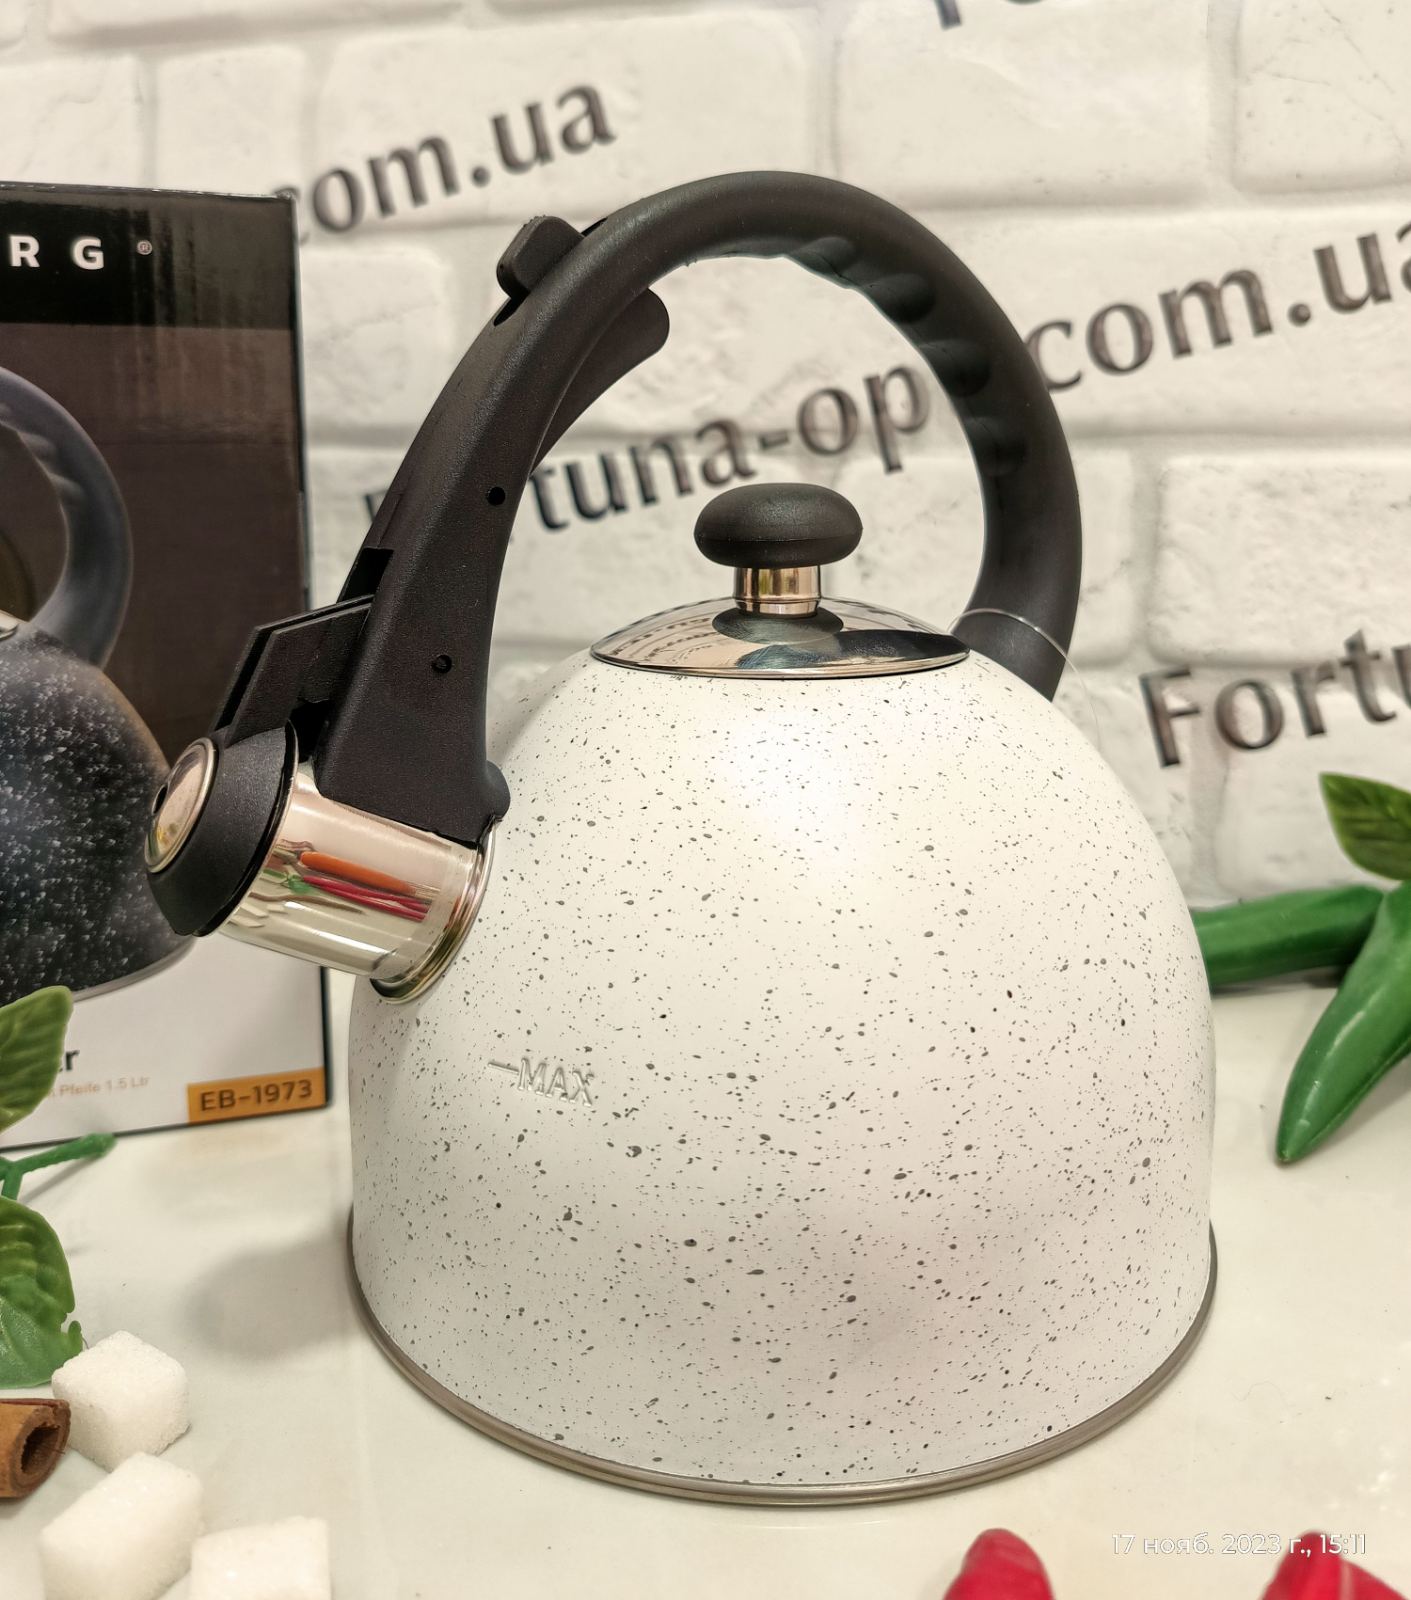 Чайник с мраморной крошкой Edenberg 1,5 л EB - 1973 ✅ базовая цена $9.54 ✔ Опт ✔ Скидки ✔ Заходите! - Интернет-магазин ✅ Фортуна-опт ✅